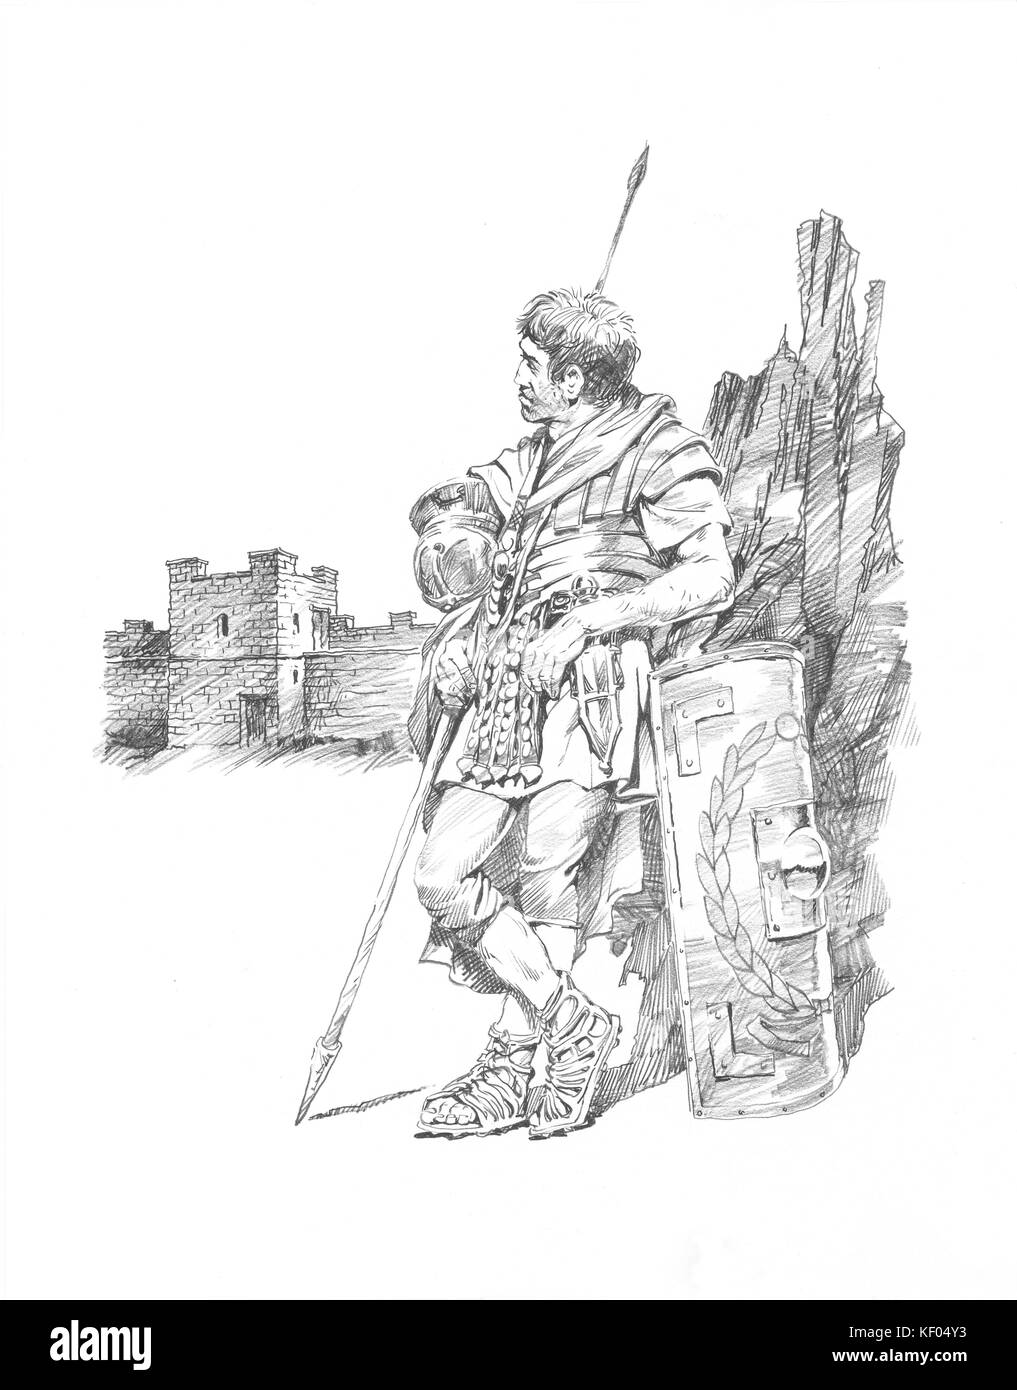 Hadrian's Wall. Wiederaufbau Zeichnung eines römischen Soldaten ruhen, mit Schirm und pilum. Lage auf der Basis von Schwarzen Karren Revolver (29 a). Zugeschrieben Stockfoto